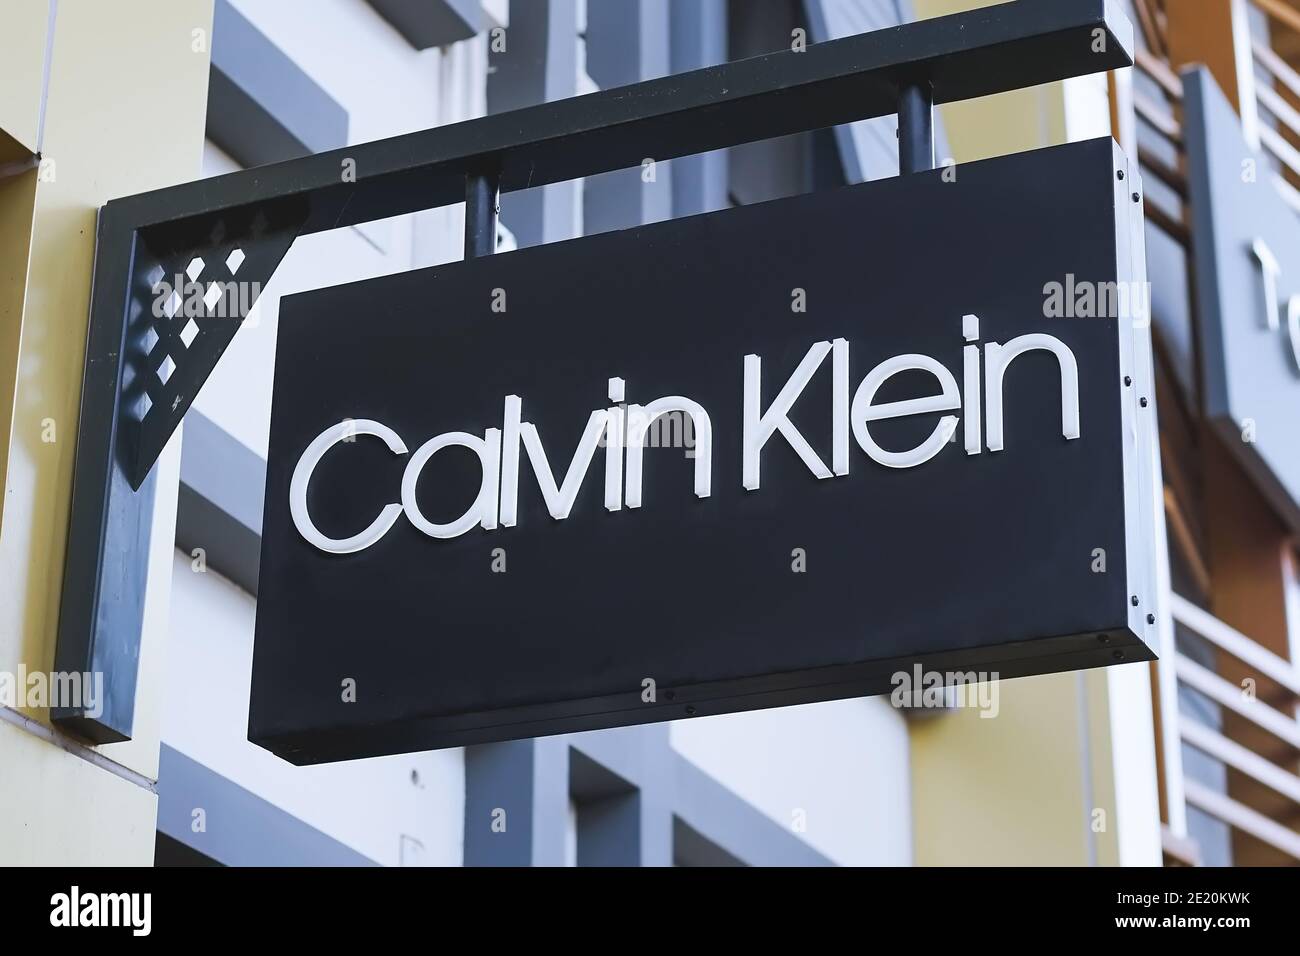 Calvin klein shop Banque de photographies et d'images à haute résolution -  Alamy